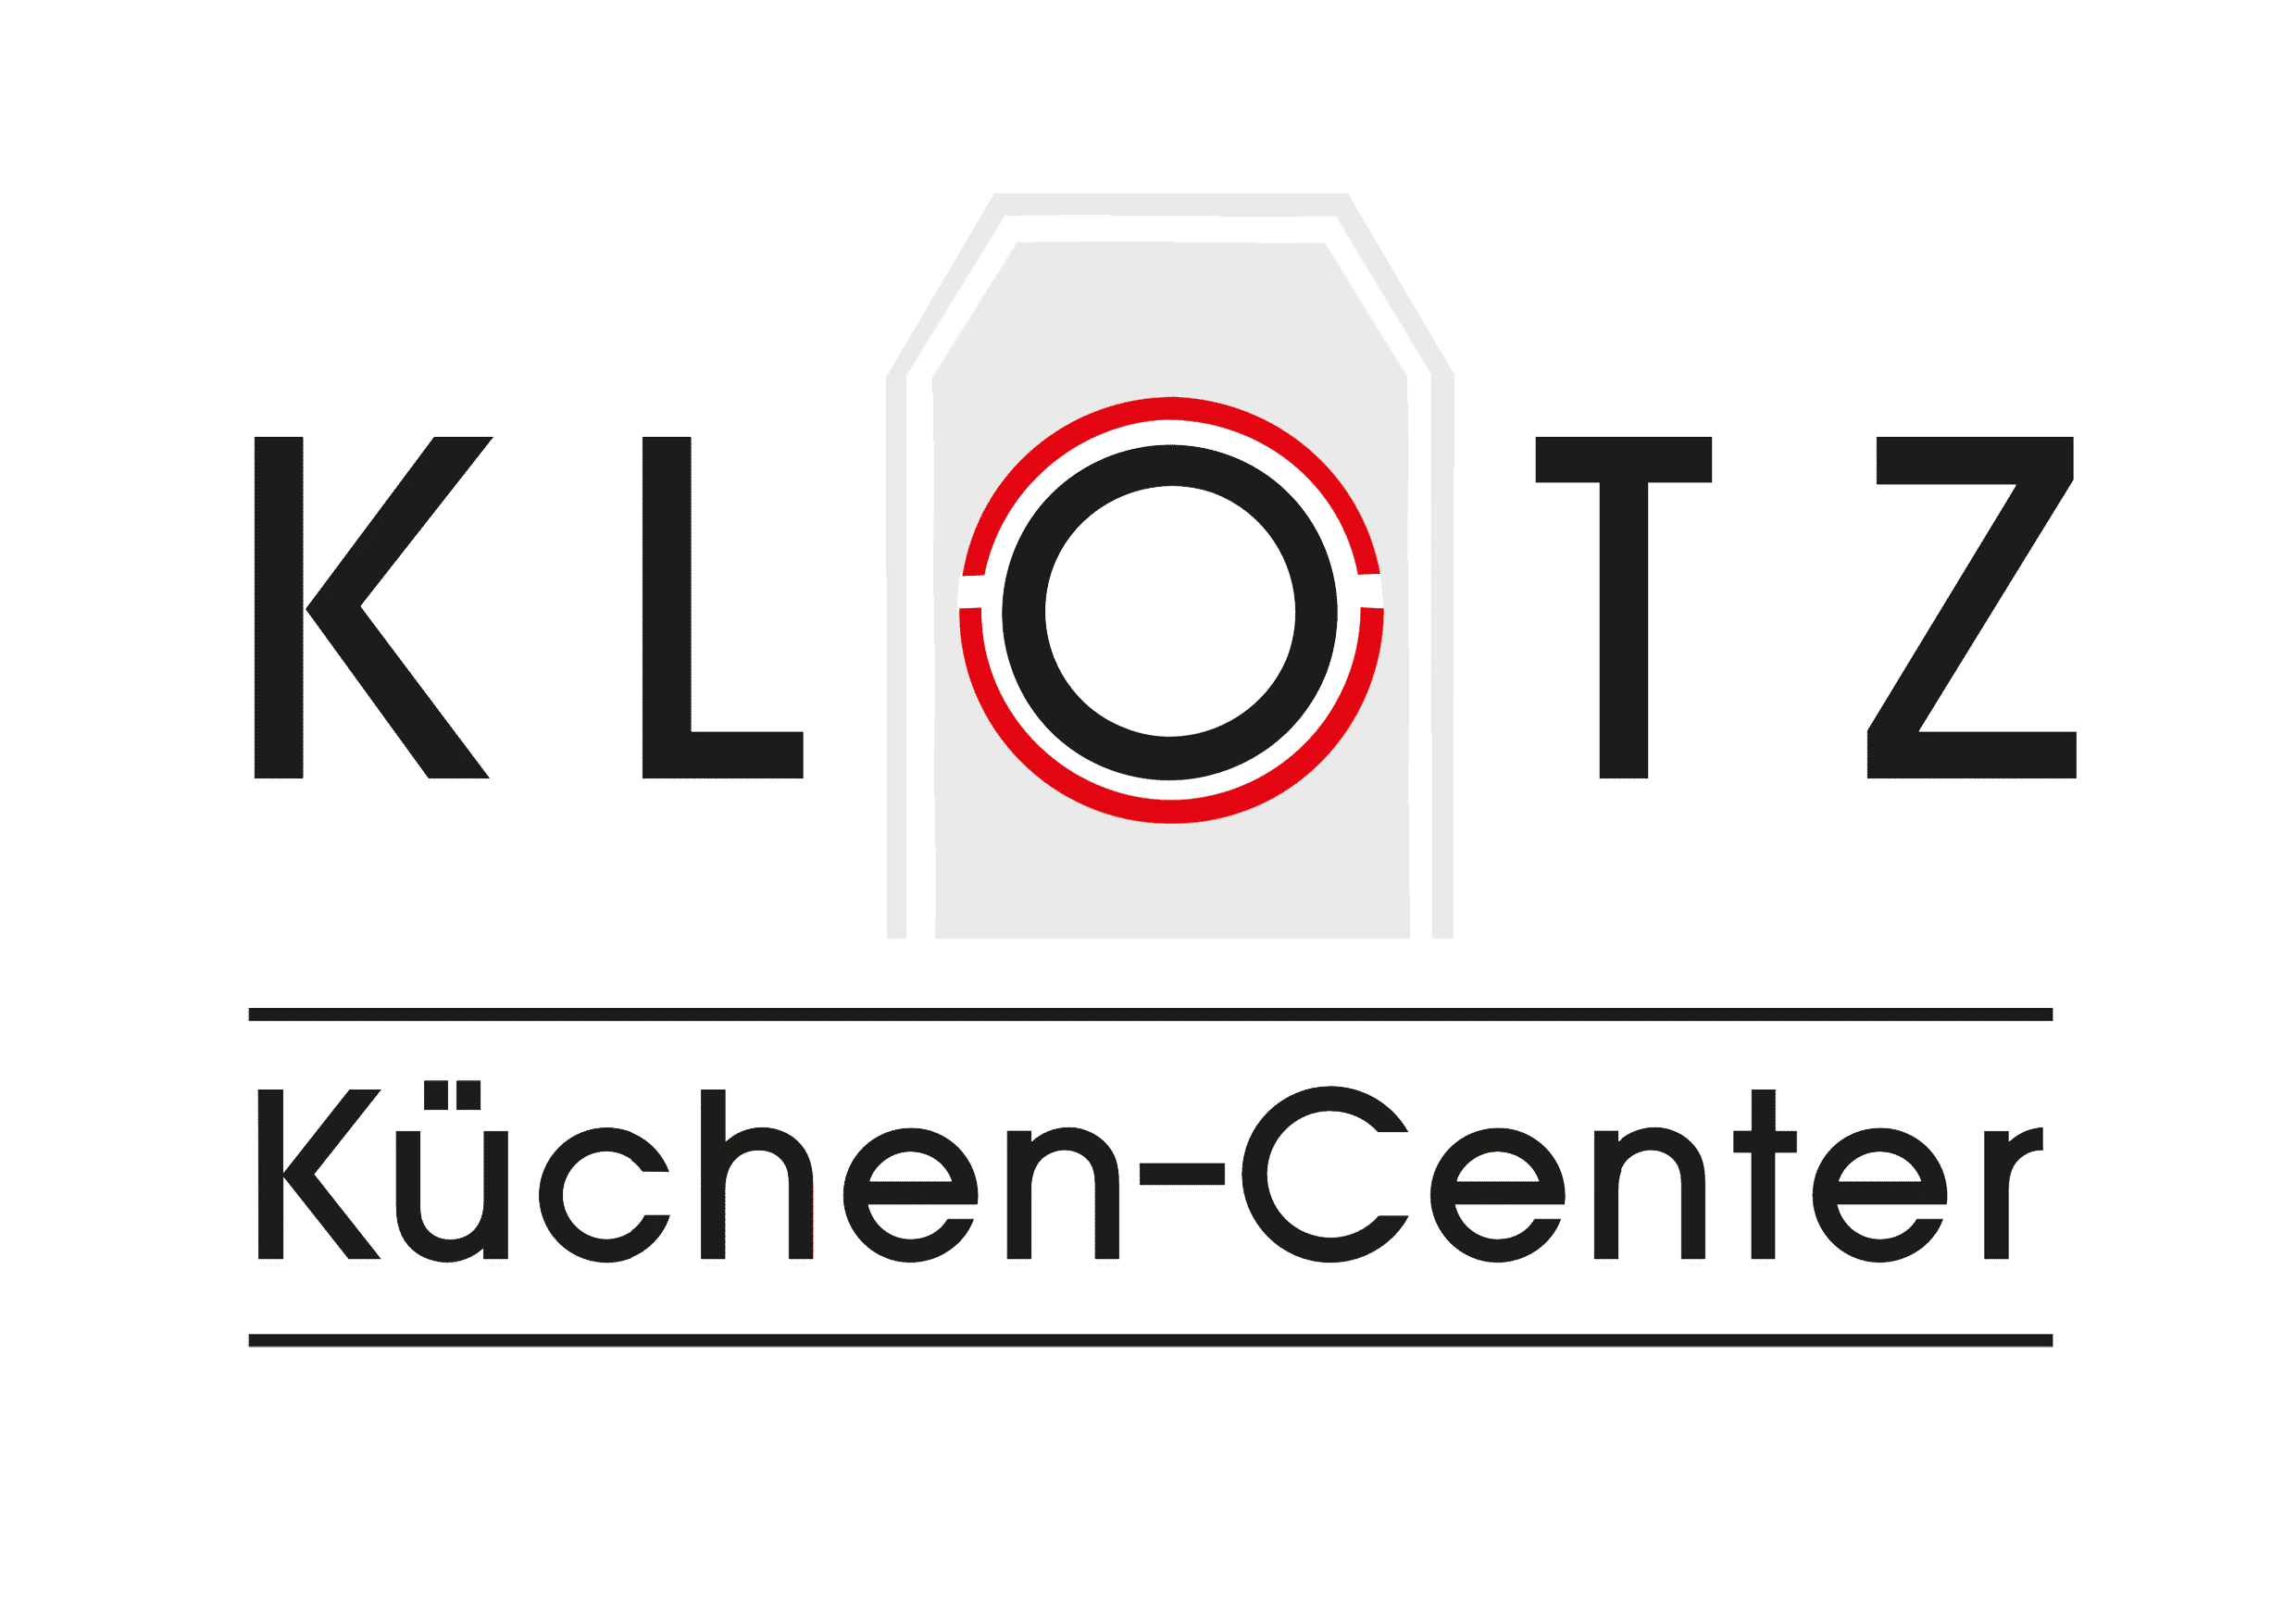 Küchen-Center Klotz KG